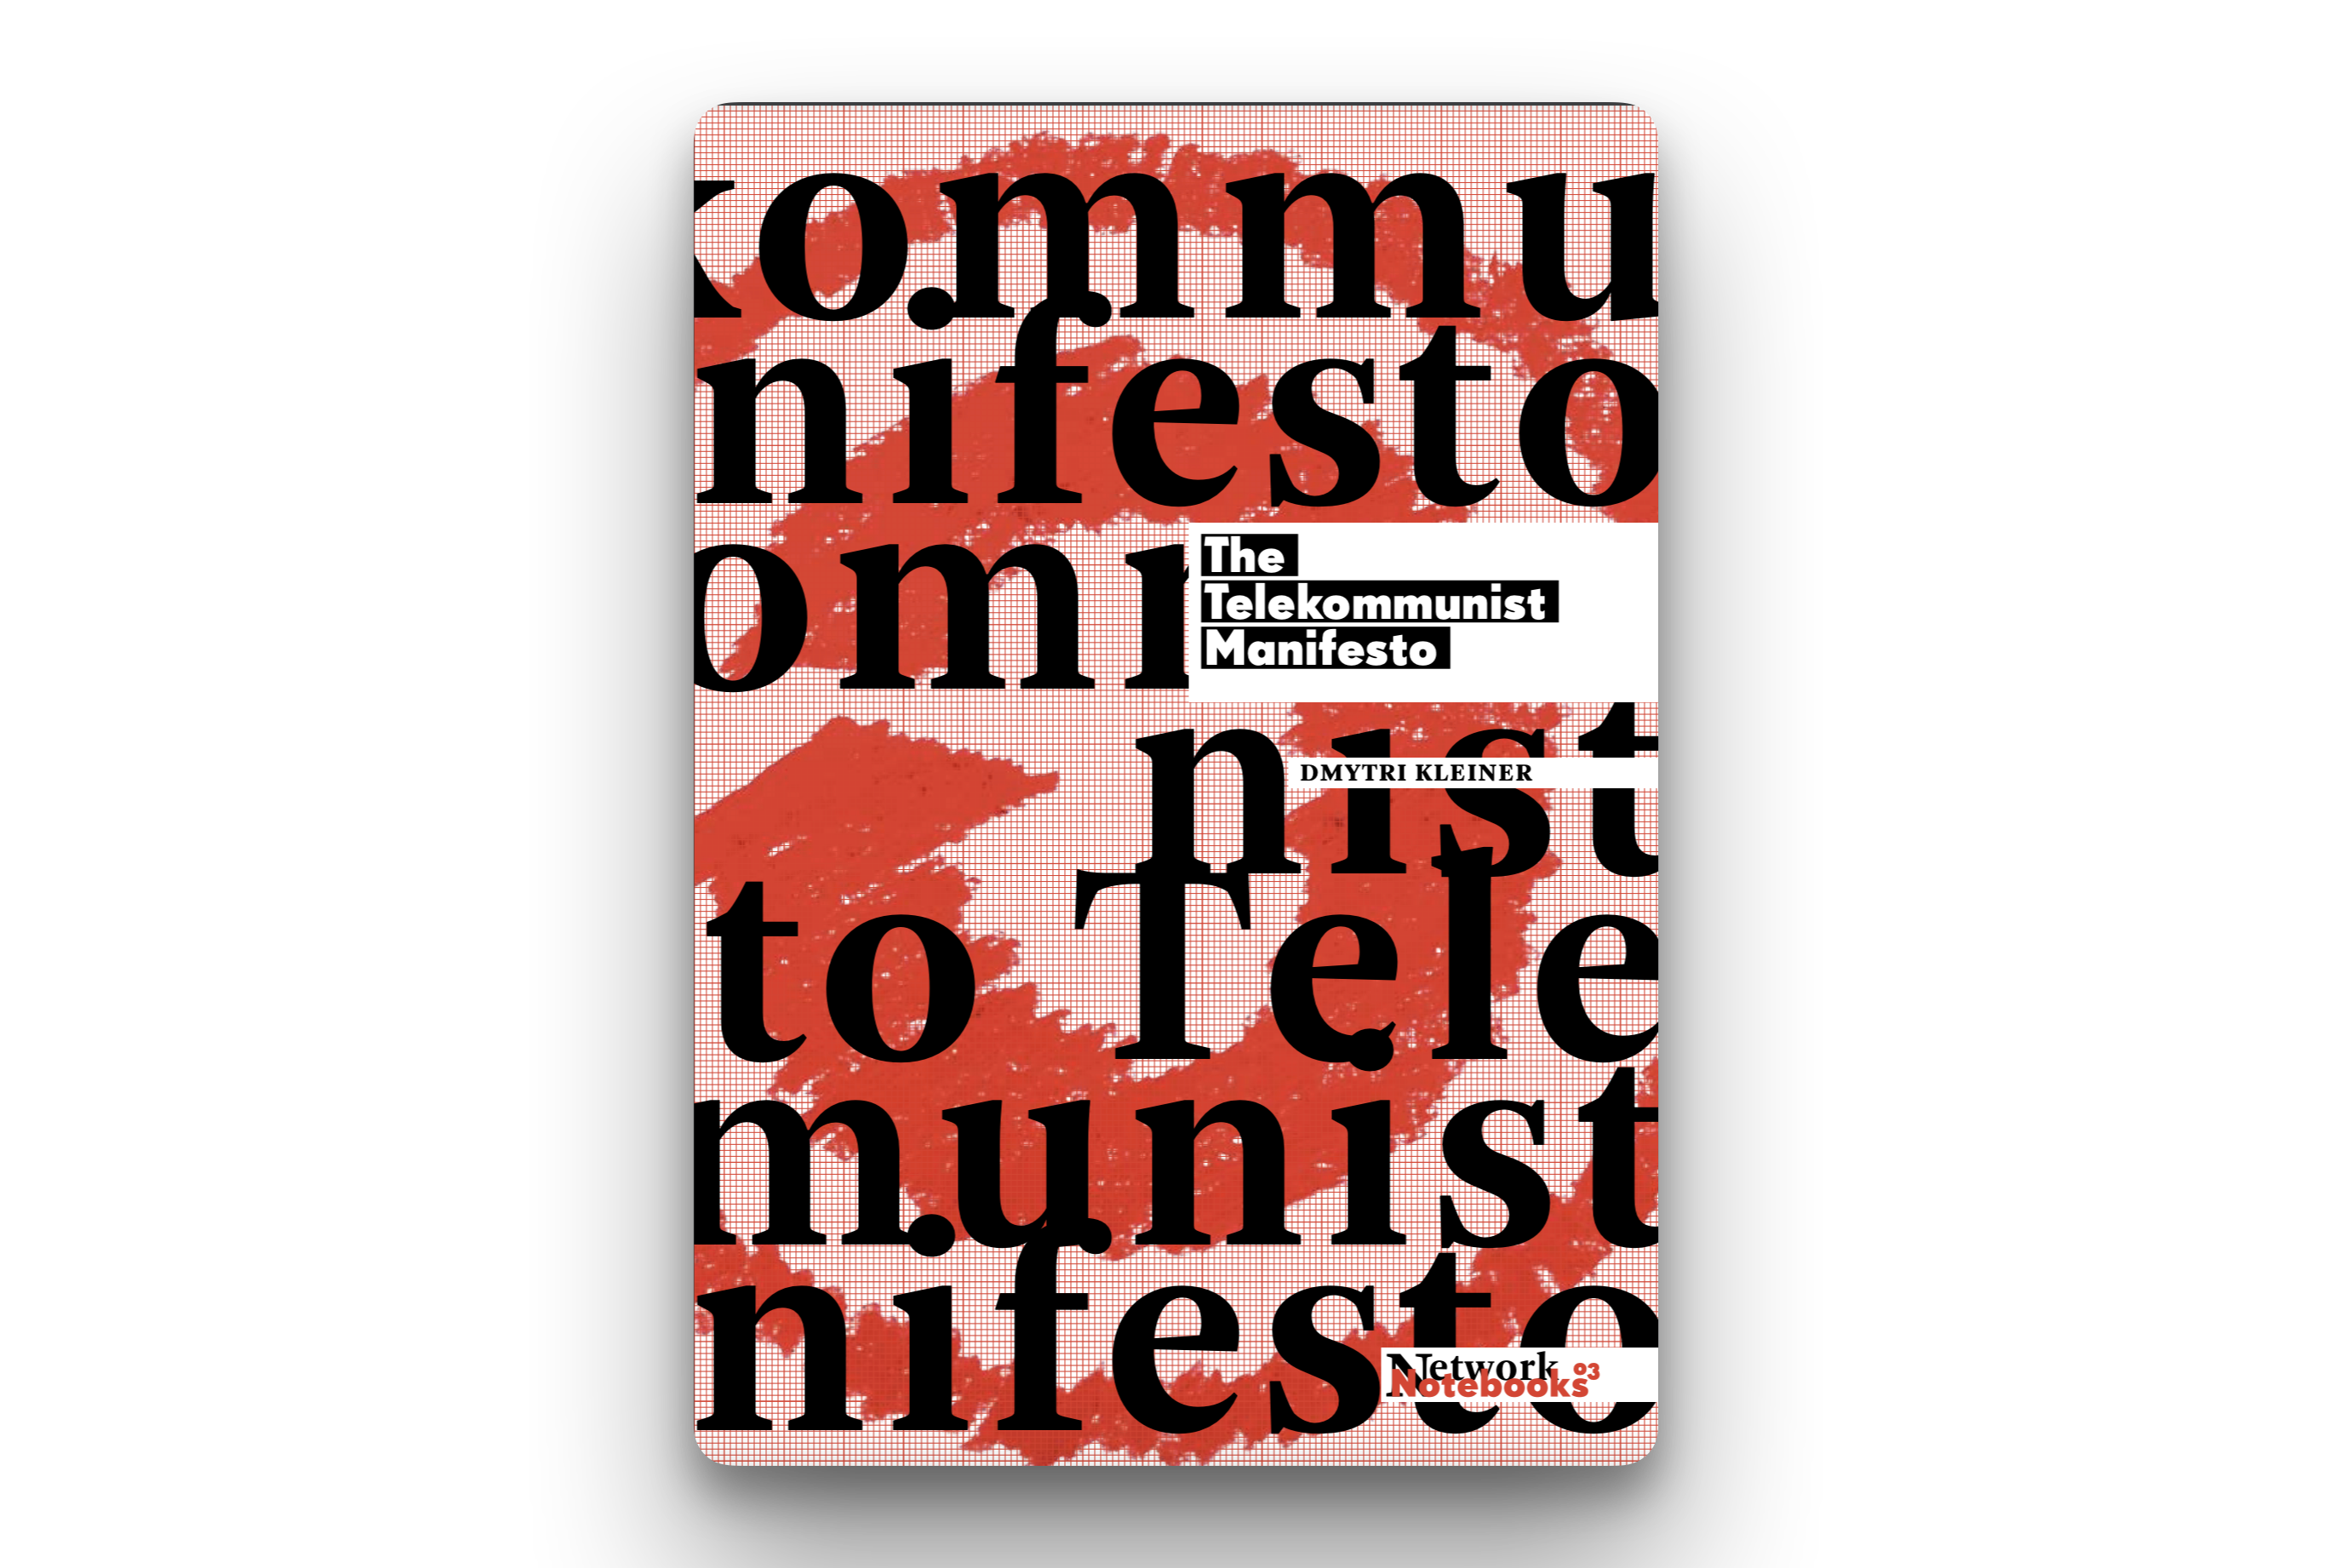 media.telekommunisten.net/manifesto.pdf